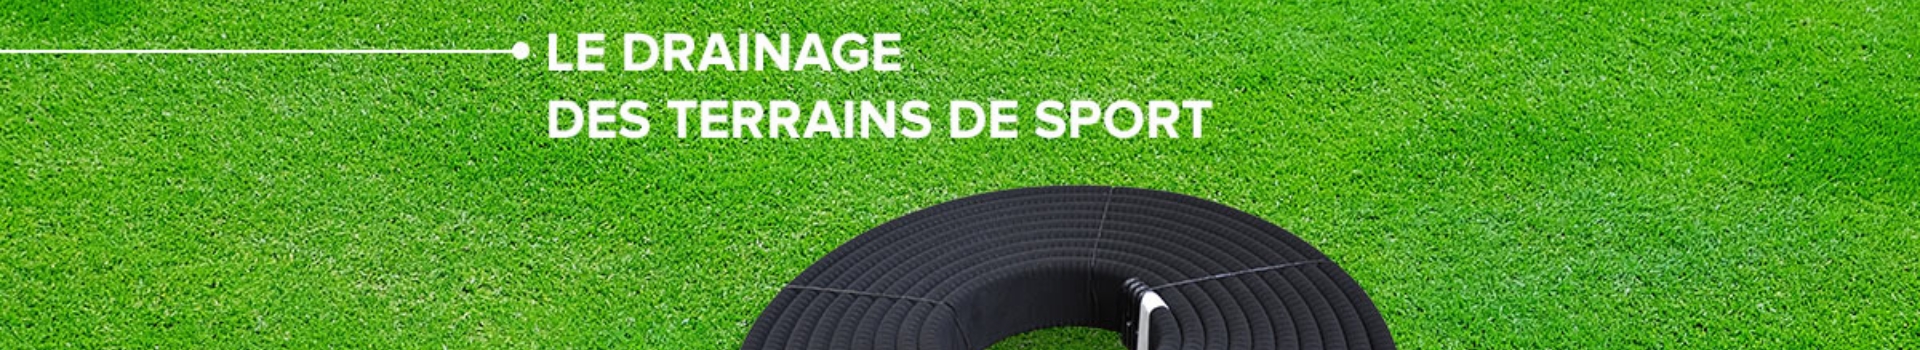 Bandeau_article_Drainage_terrain_de_sport_ATE_banner